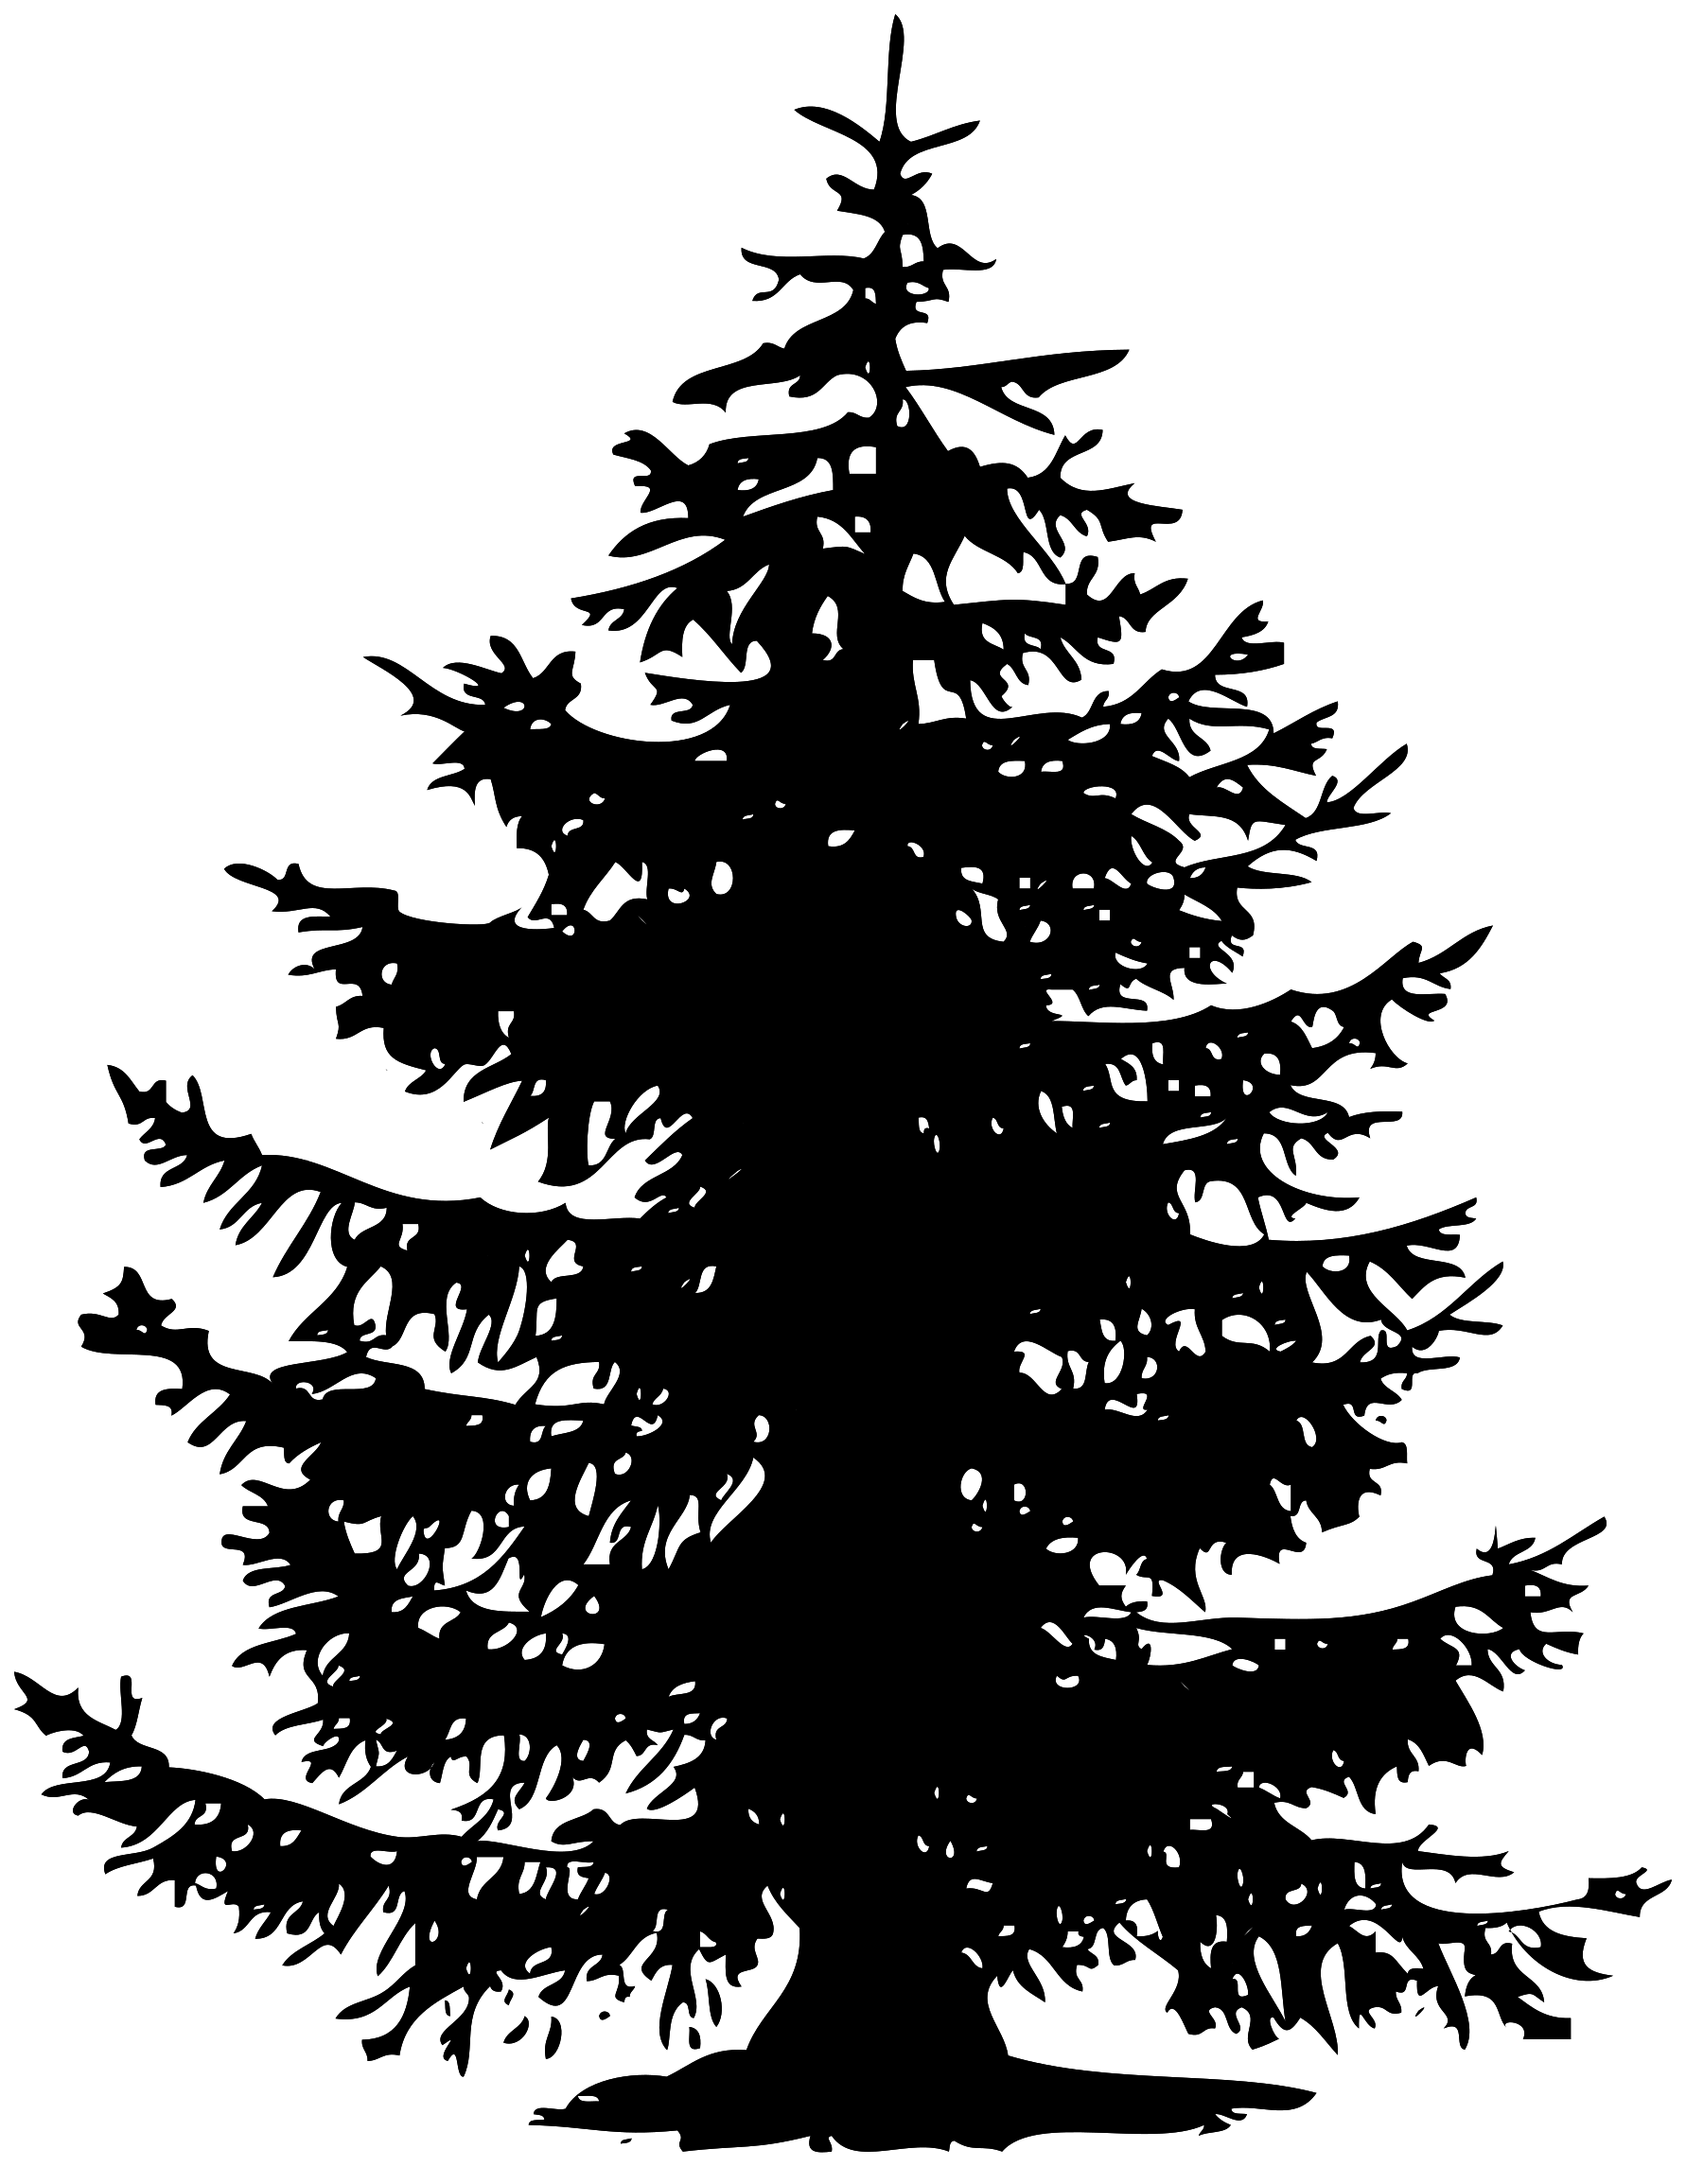 Imagen Transparente de silueta de árbol negro